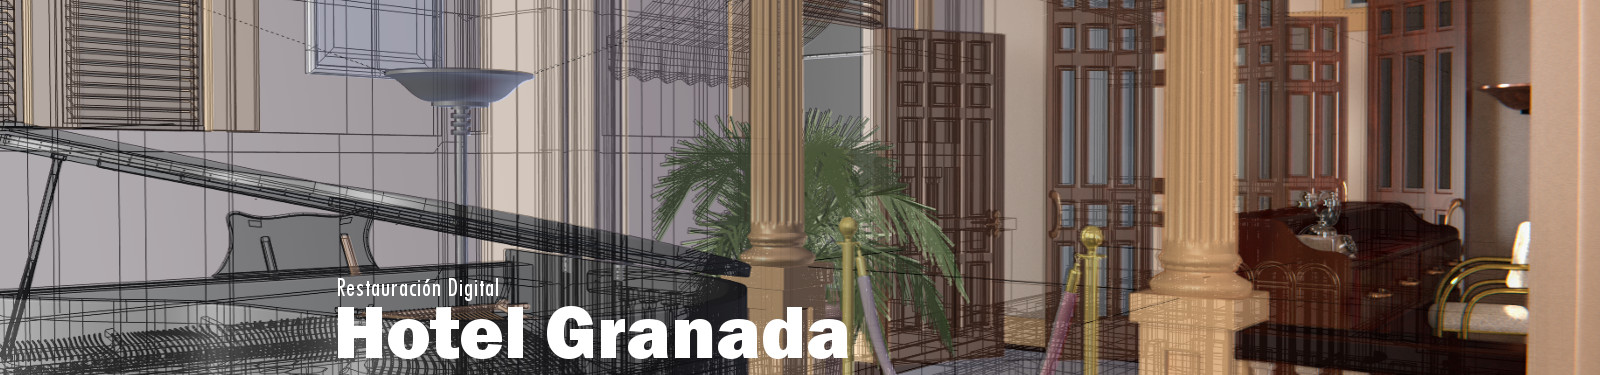 Hotel Granada - Restauración Digital